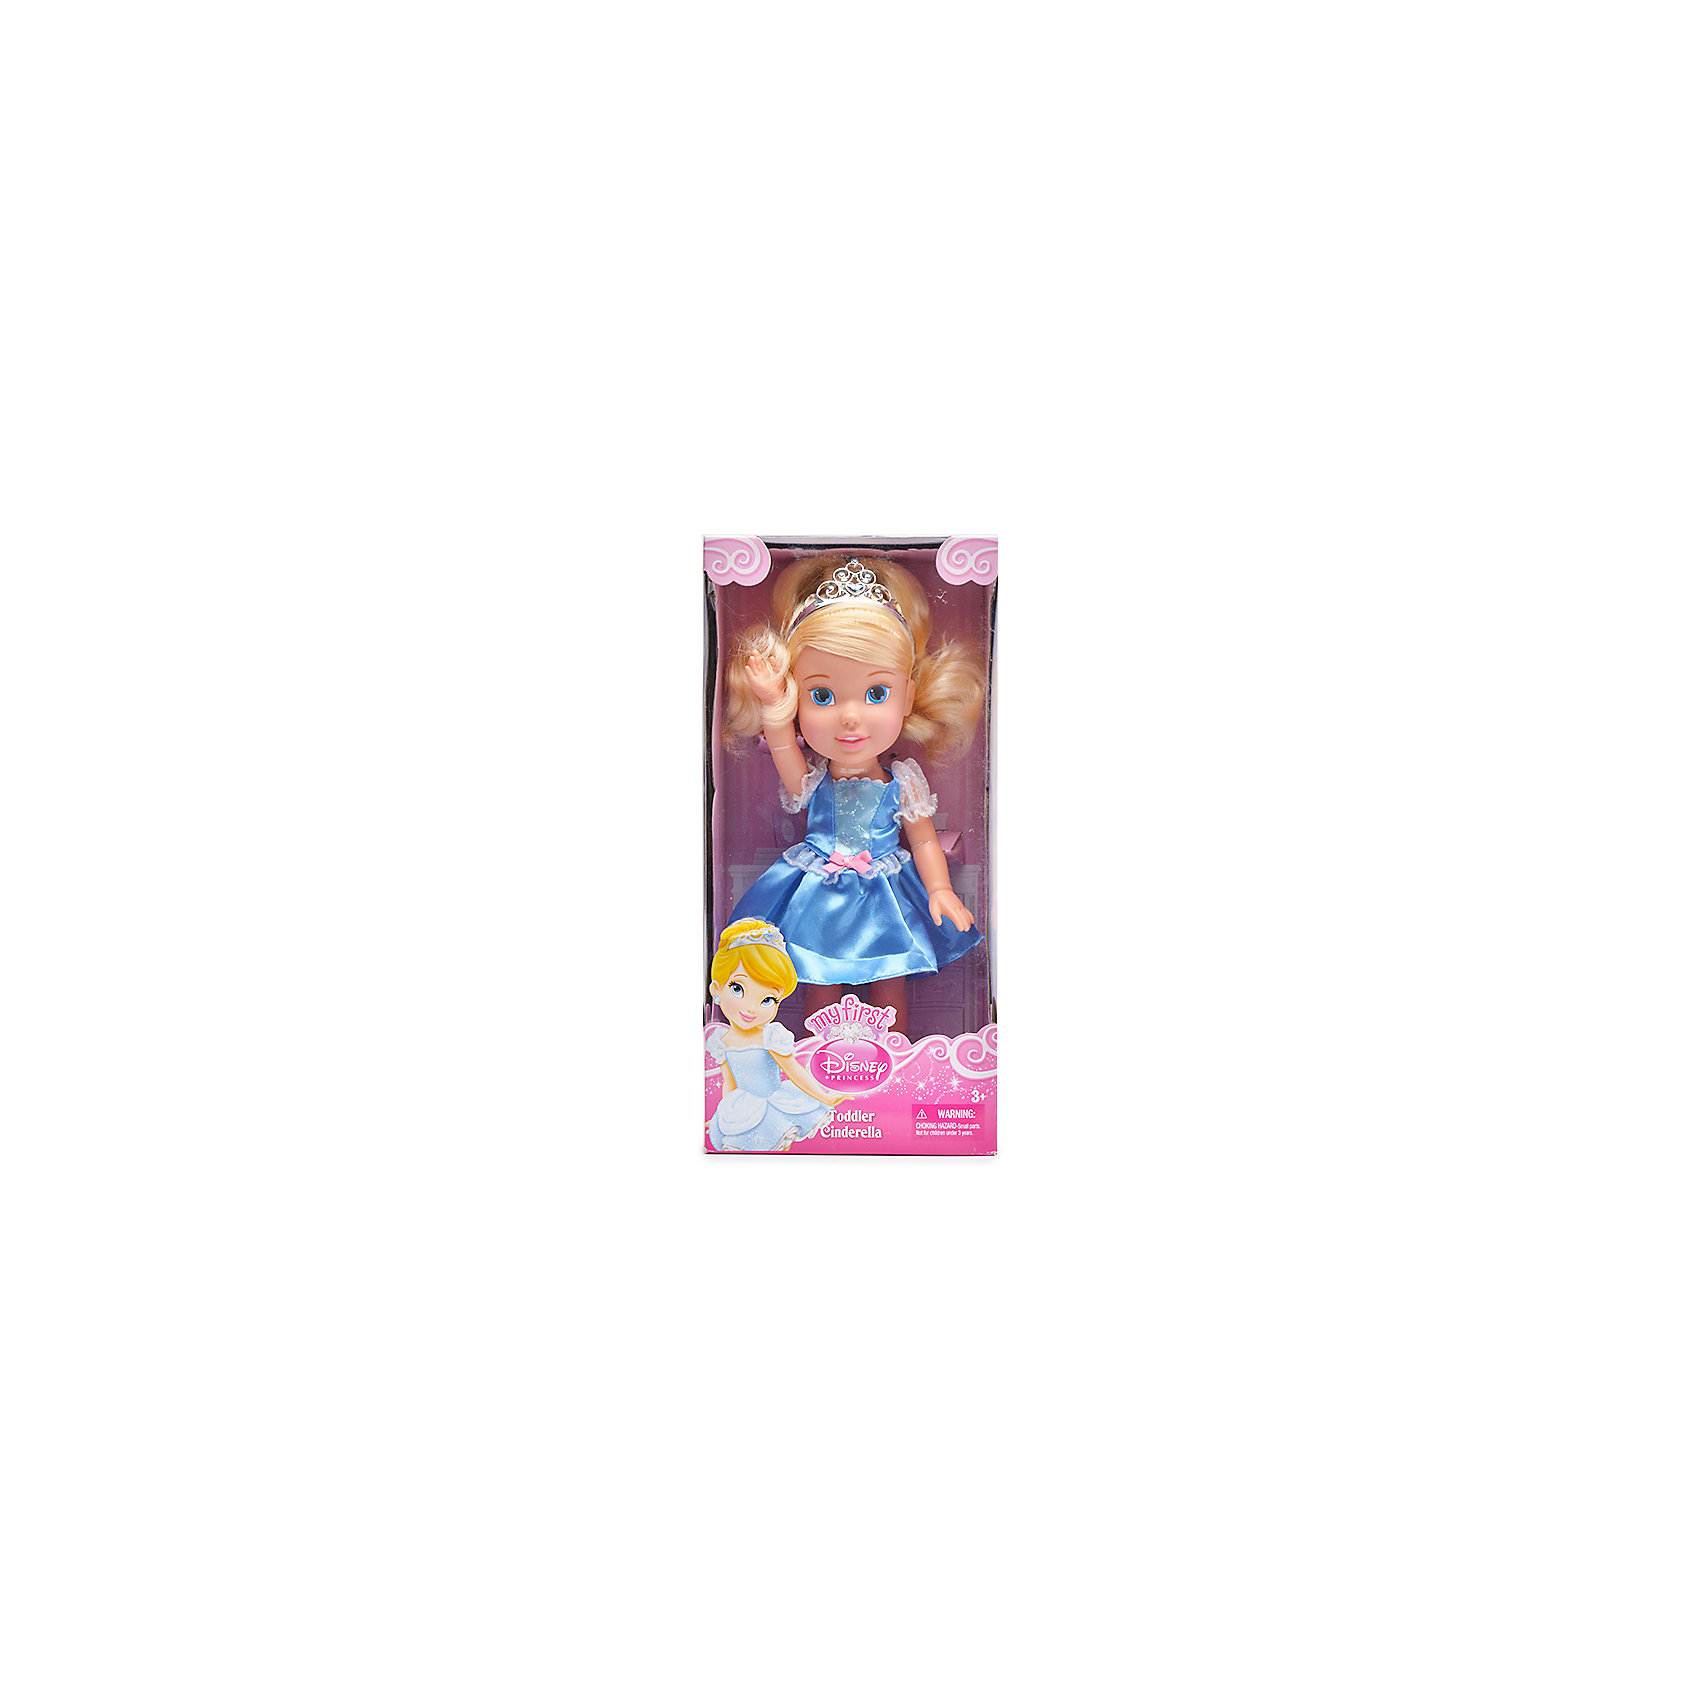 Принцесса малышка s класса. Кукла Disney принцесса малышка 31 см 75122 751170. Кукла 31 см принцесса Дисней малышка, 751170. Кукла 31 см принцессы Дисней малышка с украшениями, 791820. Кукла 80 см Дисней.